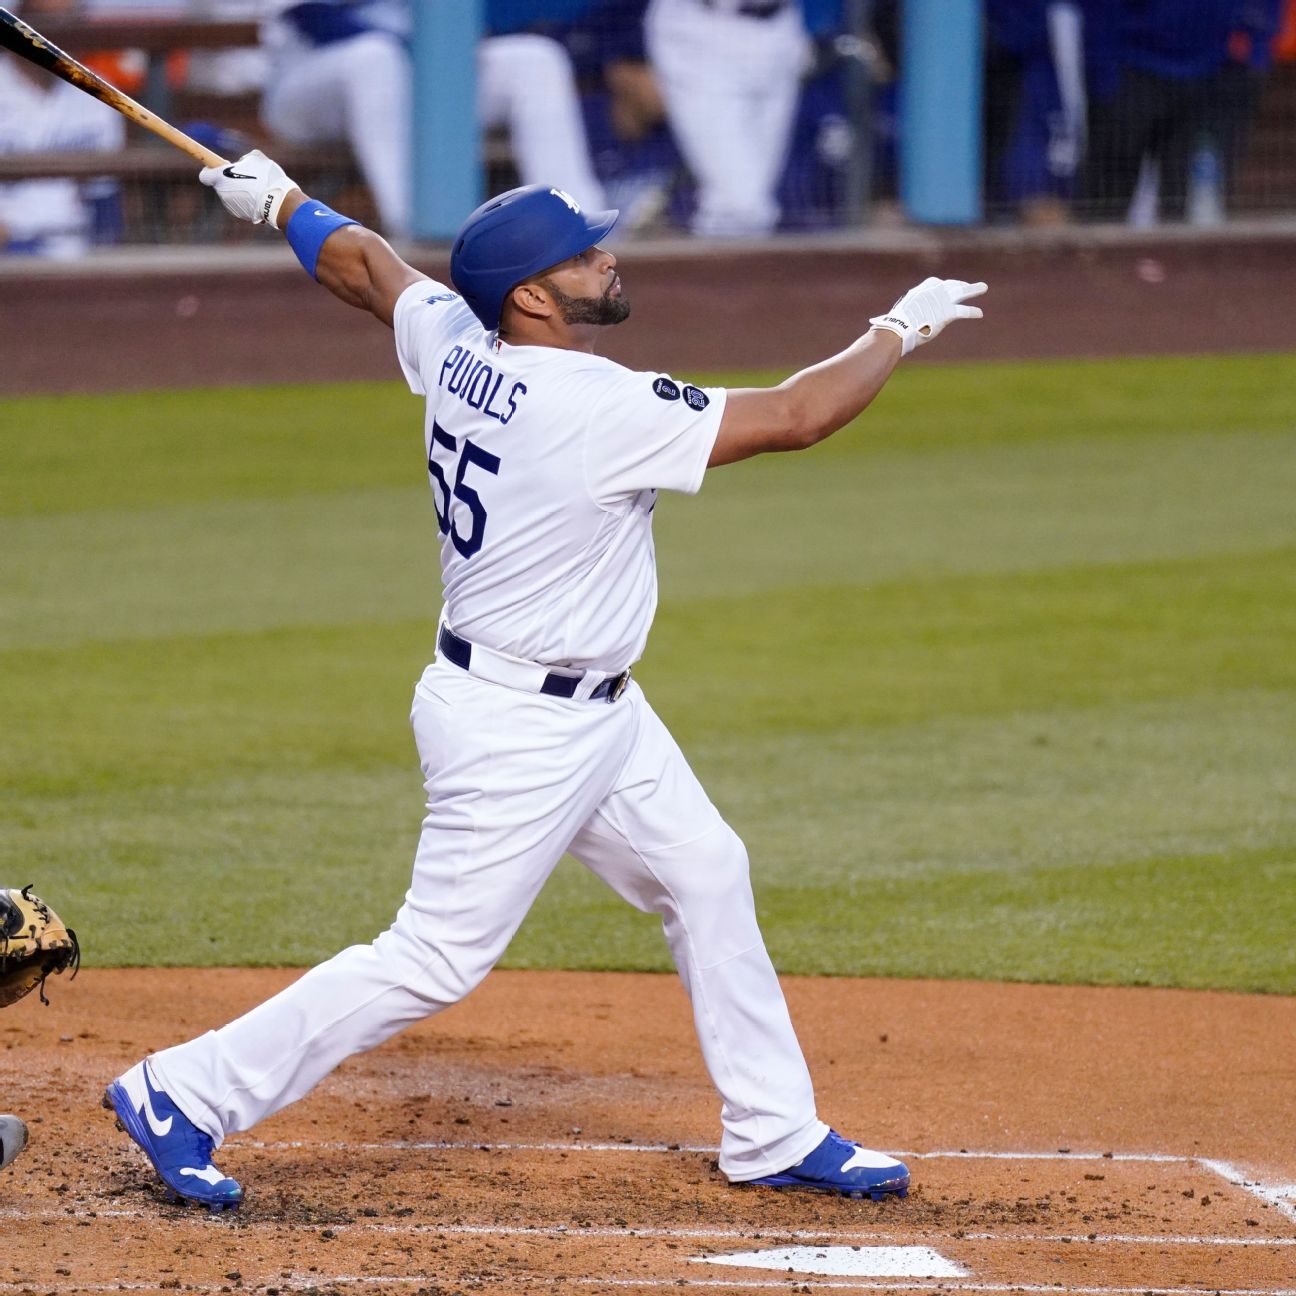 Albert Pujols, Dodgers scenarios from worst to best